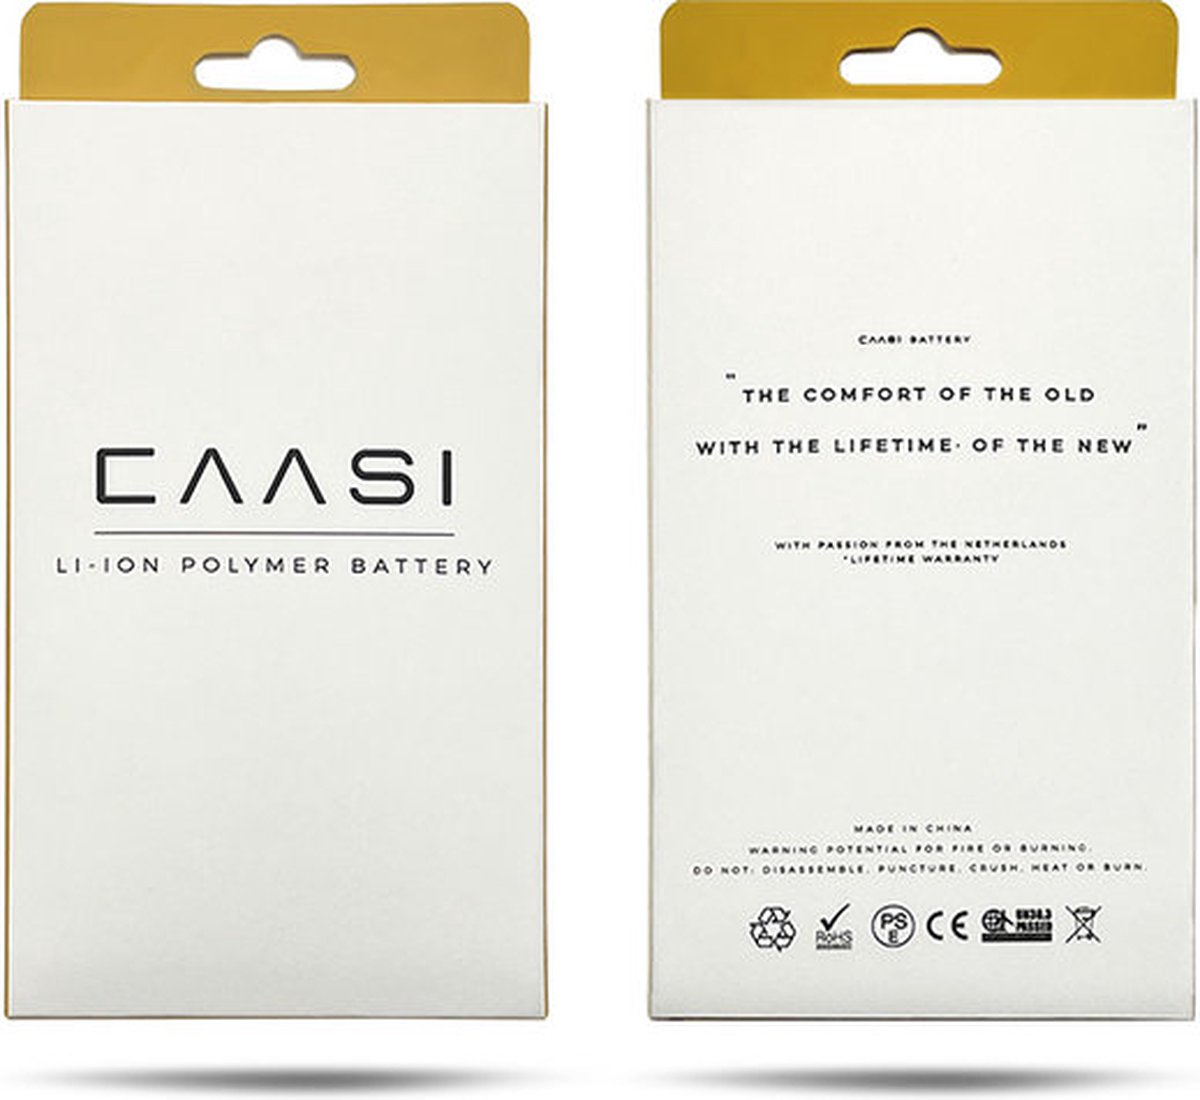 Caasi iPhone 6 Batterij | Batterij sticker | Originele kwaliteit |